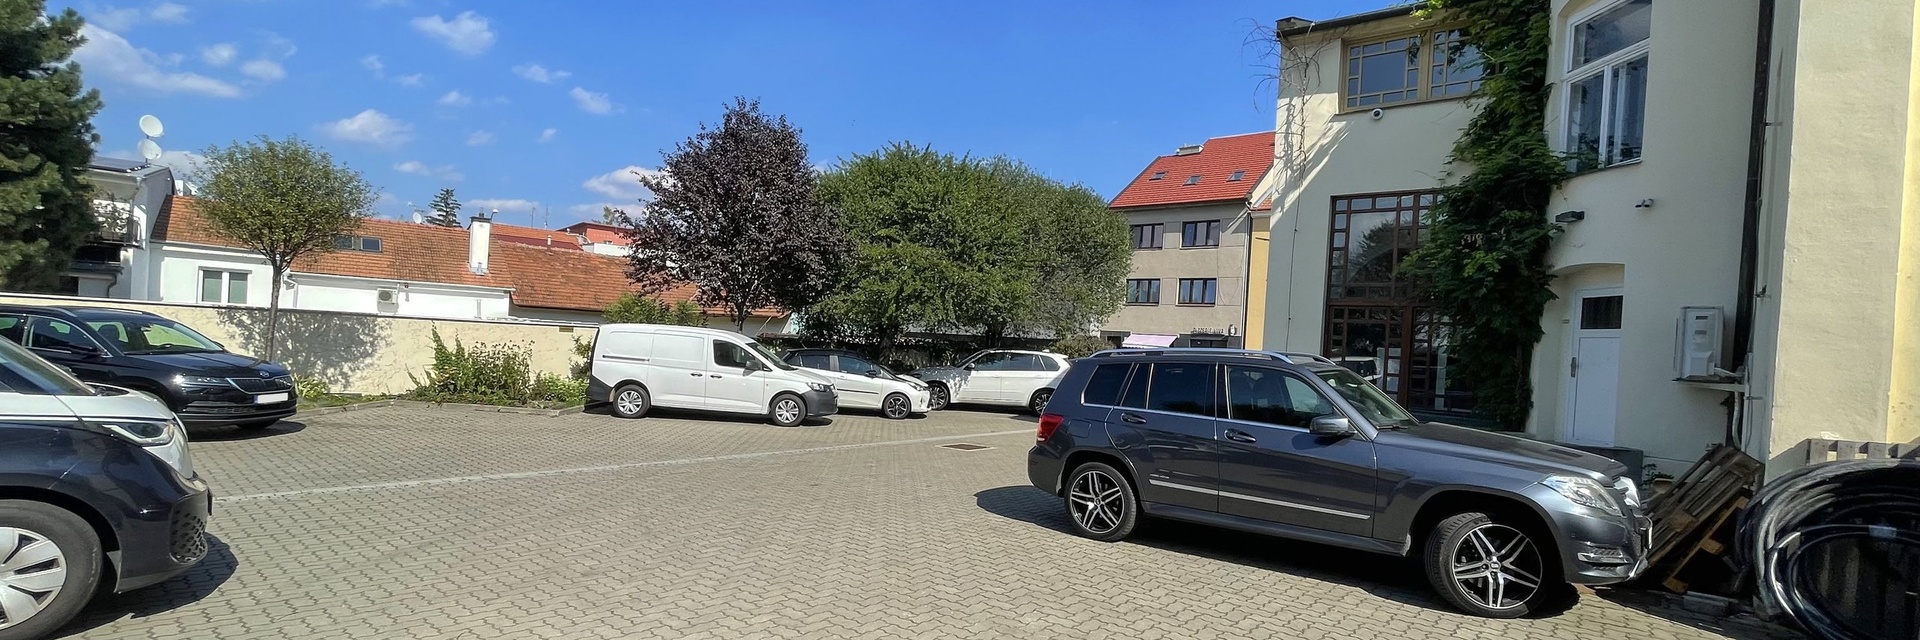 Pronájem exkluzivního administrativního sídla s parkováním 500 m², ulice Králova, Brno